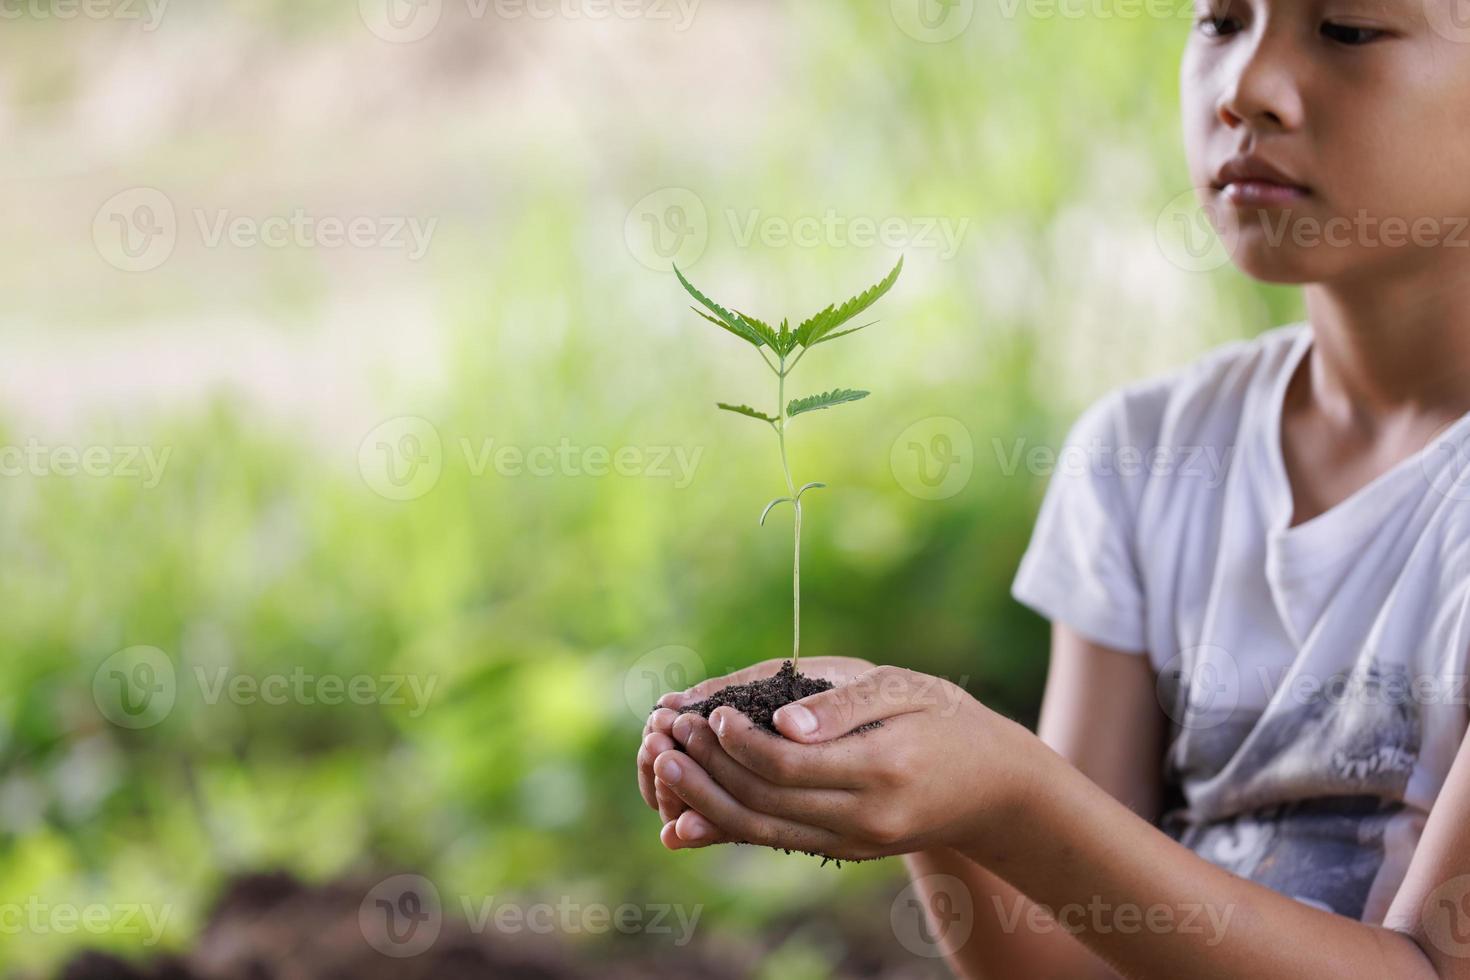 umwelt tag der erde, kind hält einen kleinen baum in der hand auf naturfeld graswald erhaltungskonzept, pflanzen bäume zur reduzierung der globalen erwärmung. foto